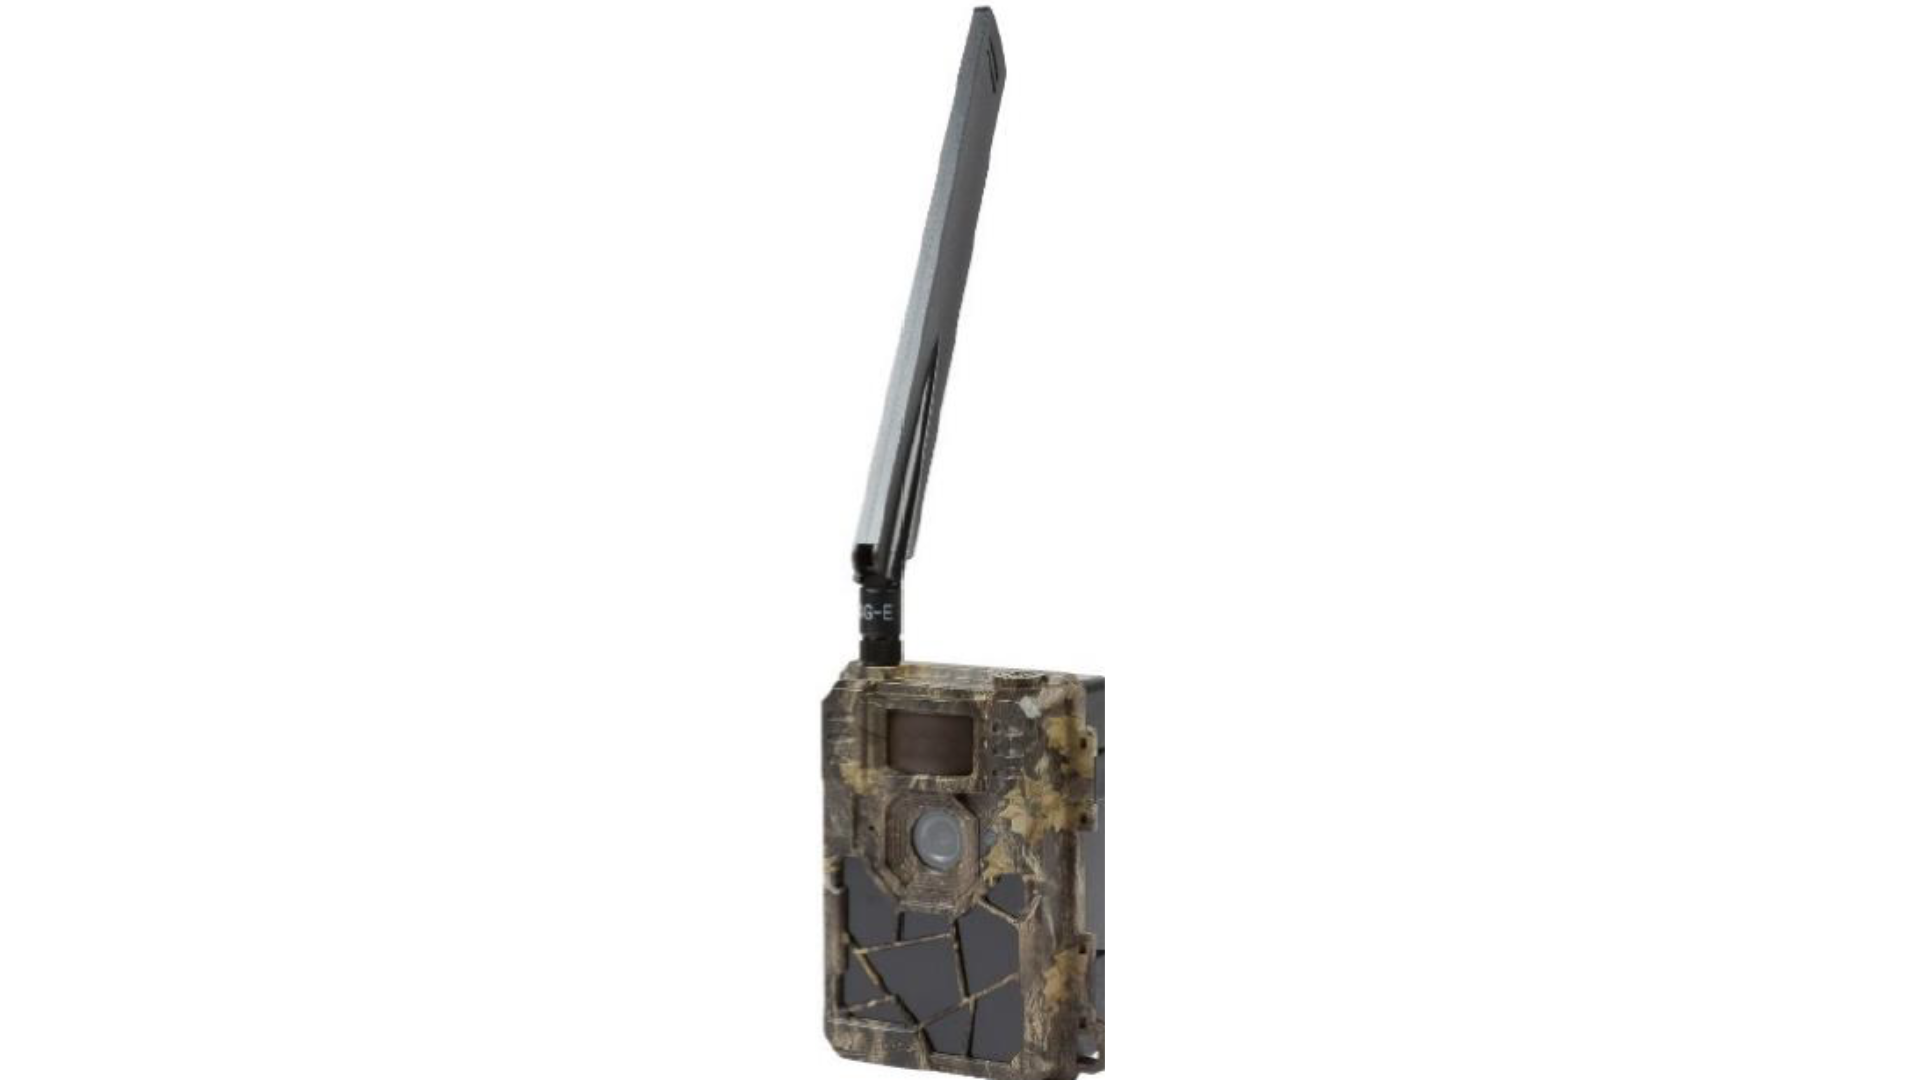 Agri46 : Opération achat groupé camera de chasse